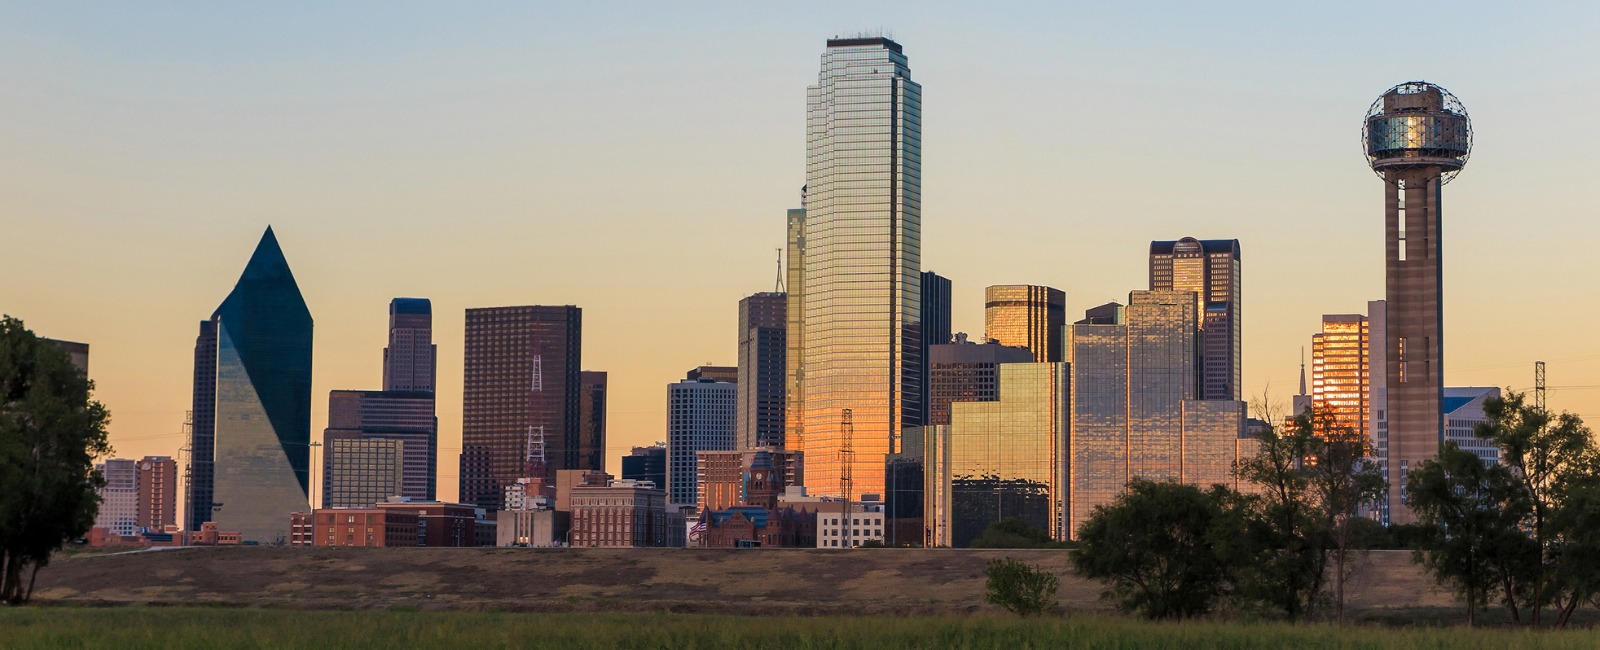 Dallas Skyline at dawn